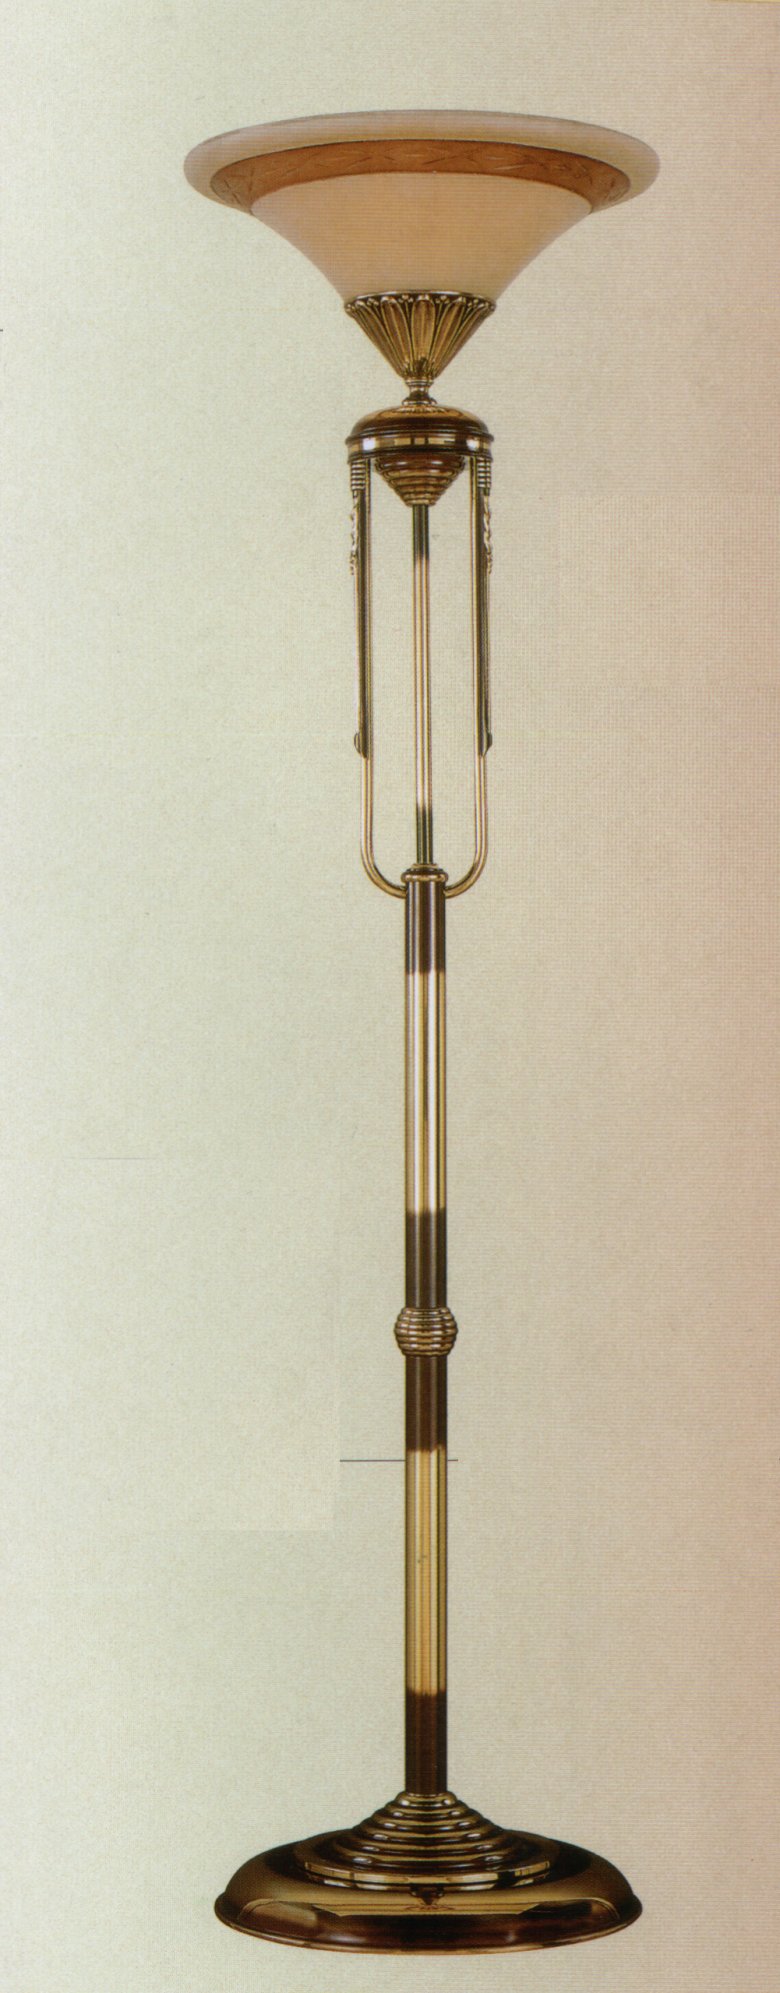 Торшер Bejorama art.1968, производство Испания; Высота:177 ;Диаметр:35 ;Глубина: ; Количество ламп:1 ; Максимальная мощность лампы: 150 Вт. ; Цвет: кожа;  Цена: ;  